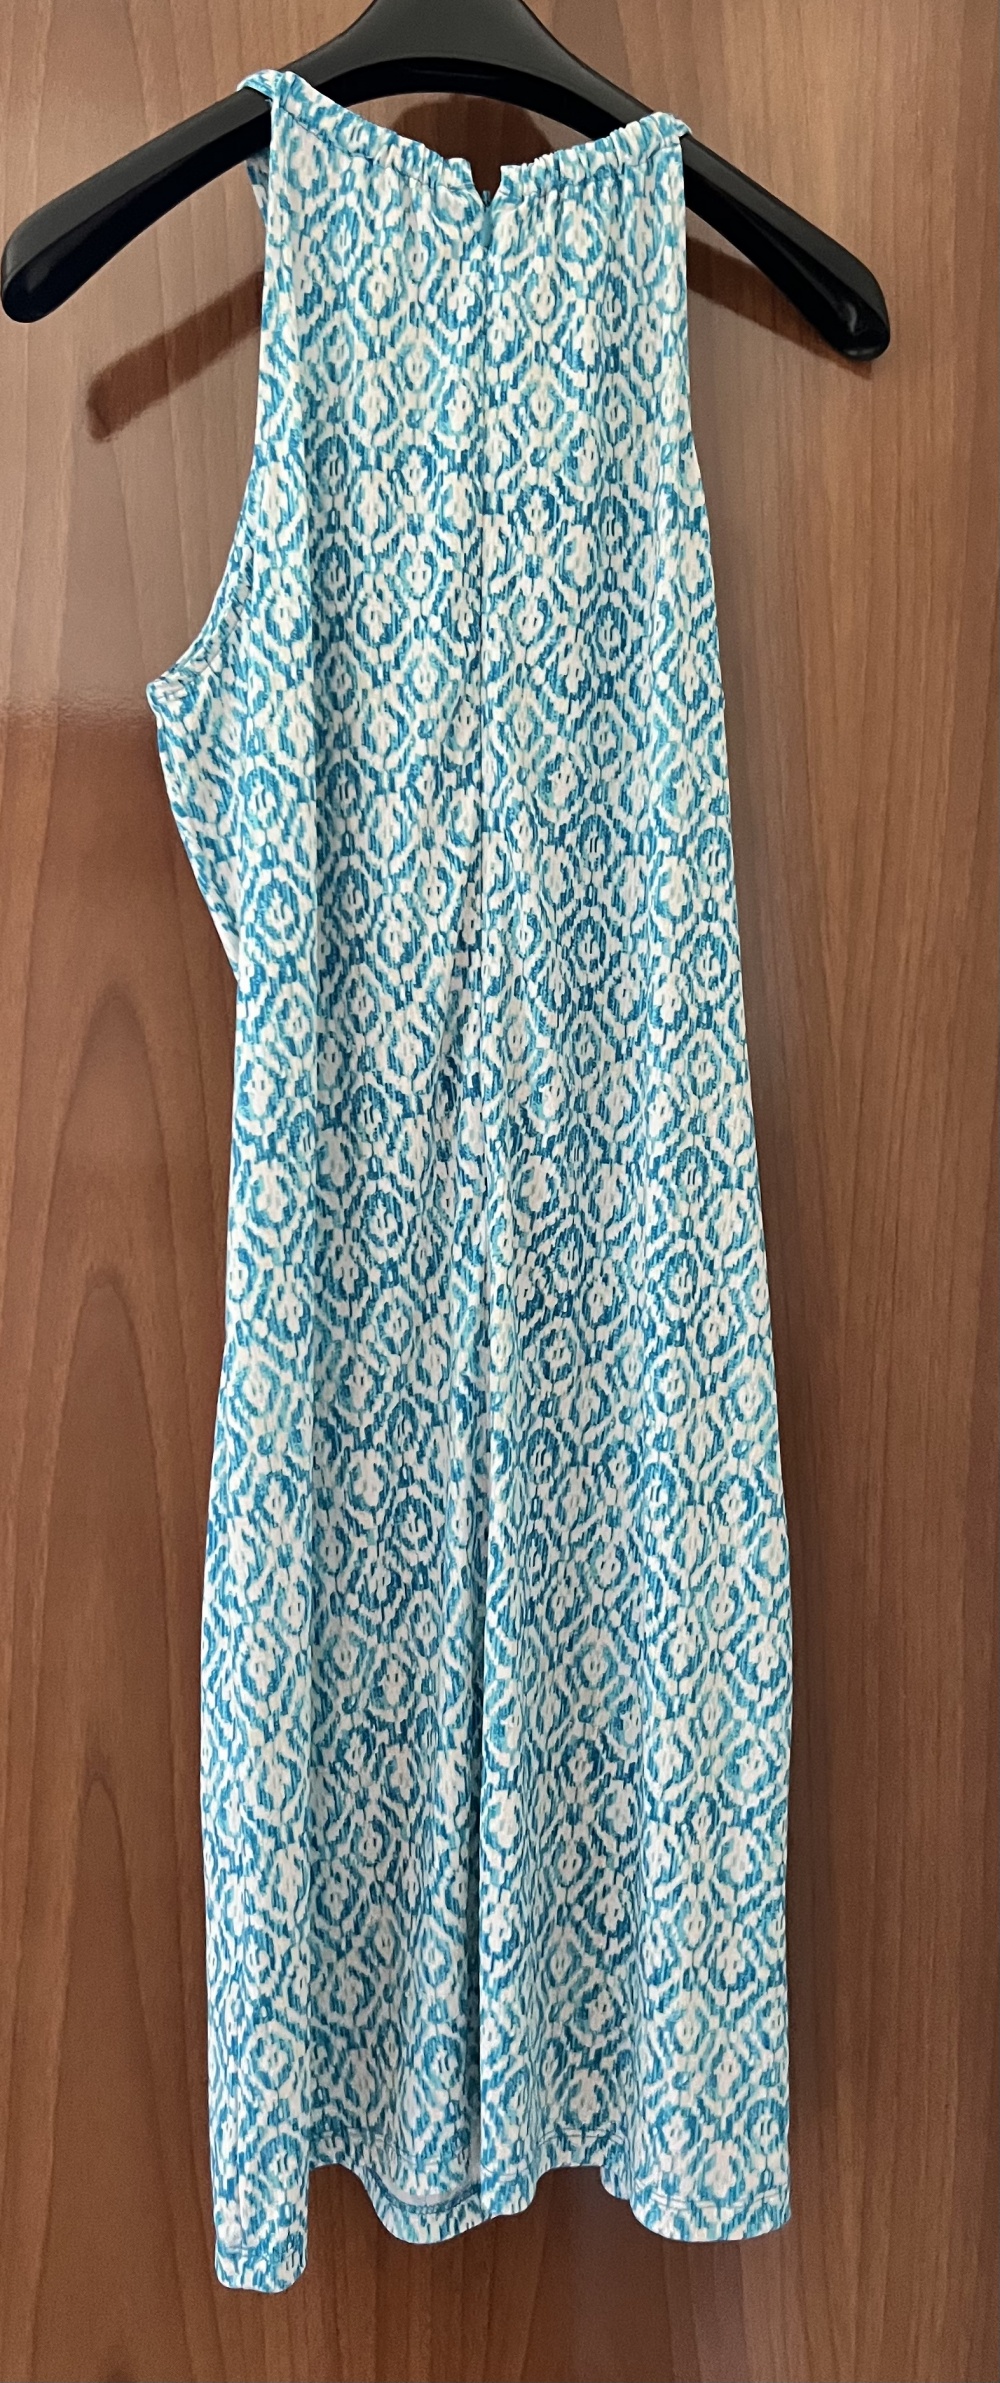 Платье Michael Kors размер 44-46